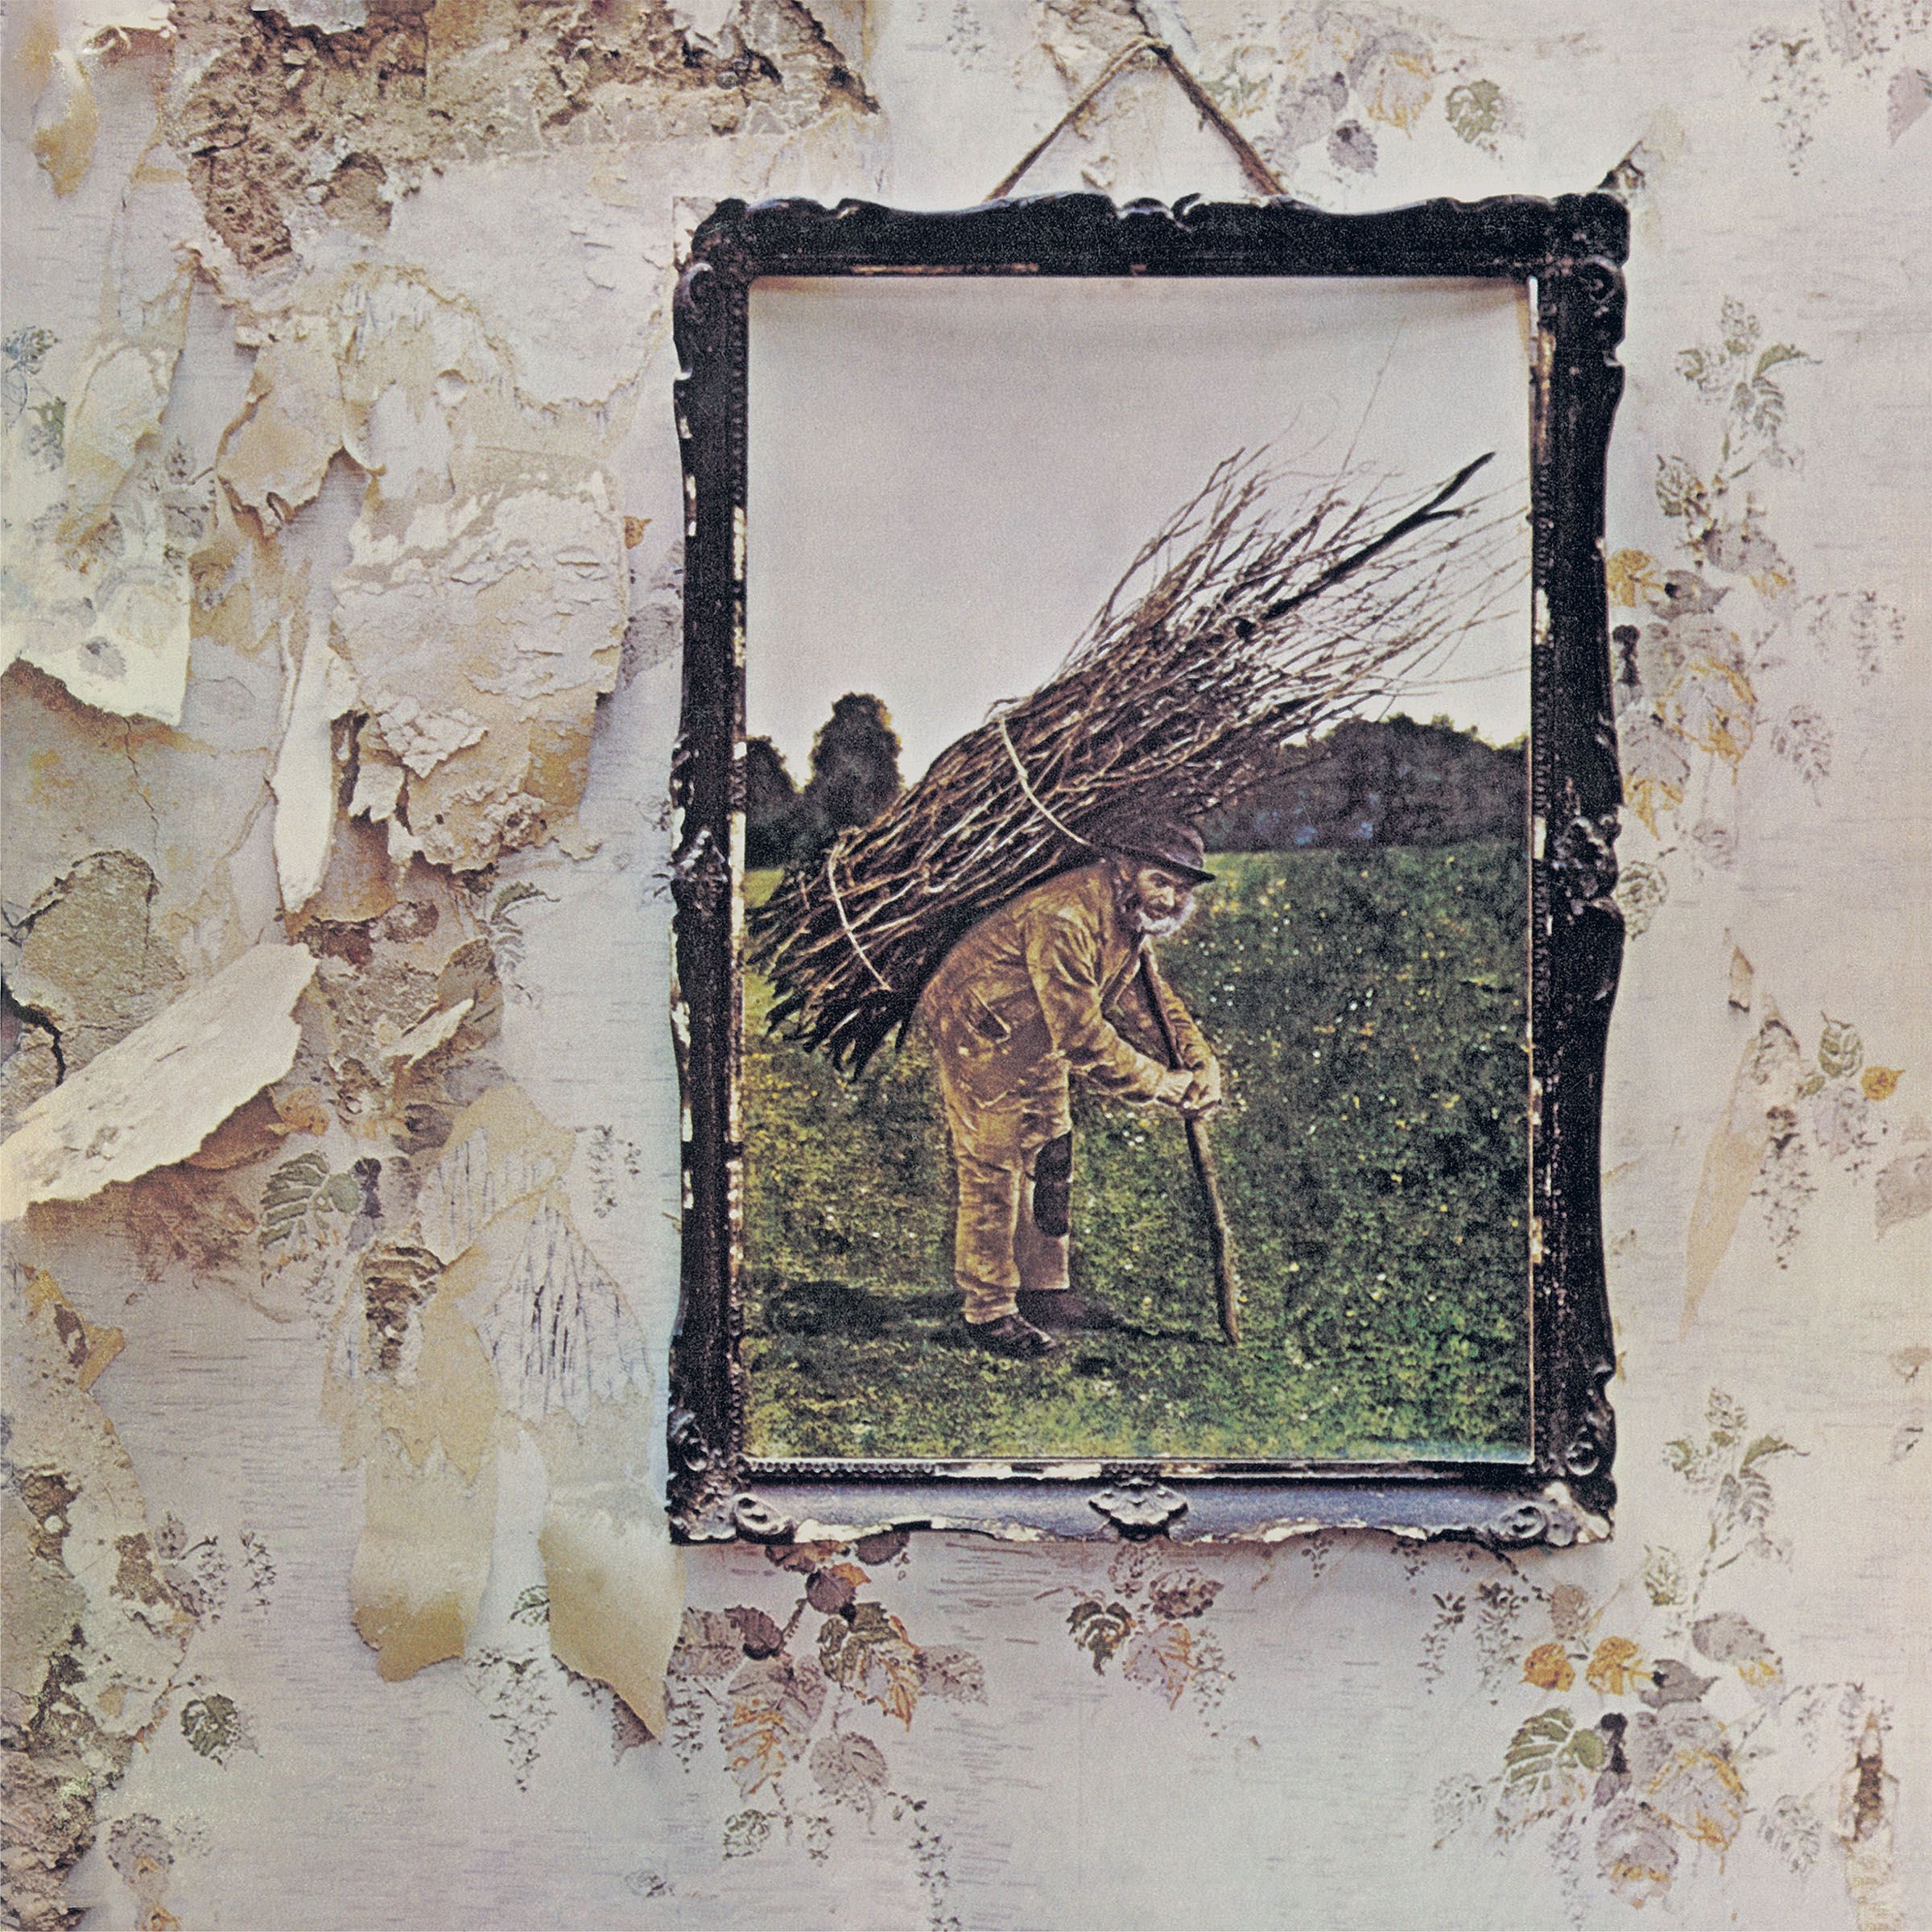 [Hi-Res/Flac][24bit/96khz] Led Zeppelin Remastered Pack (12 Albums)